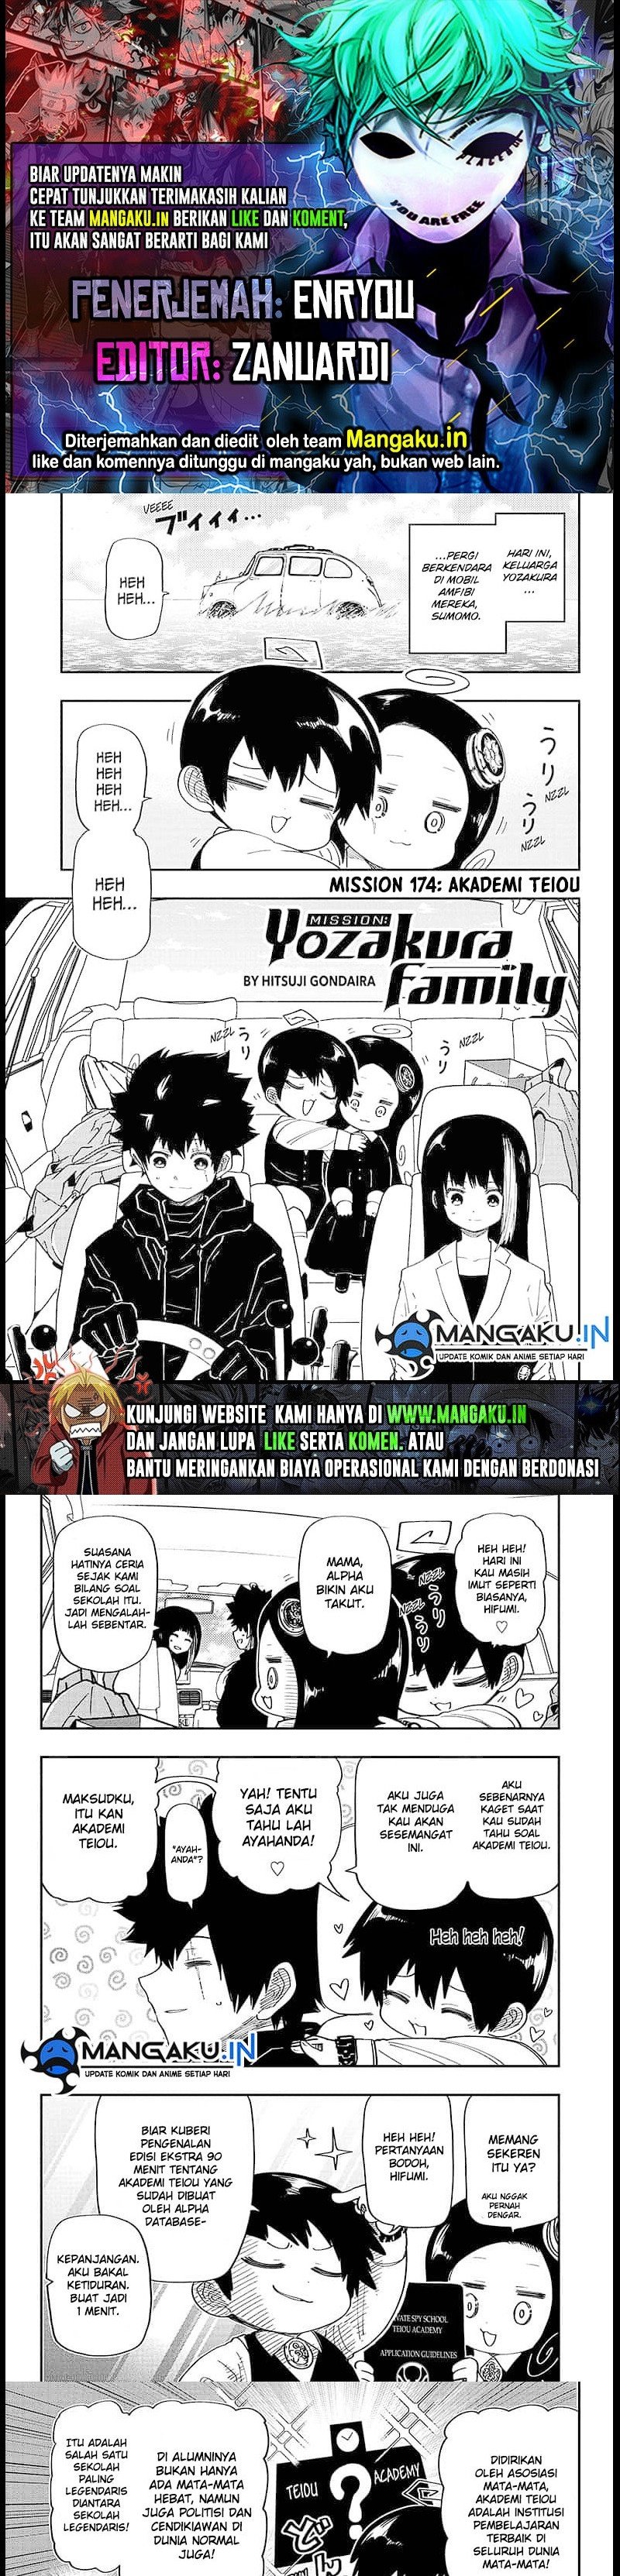 Mission: Yozakura Family Chapter 174 - 37